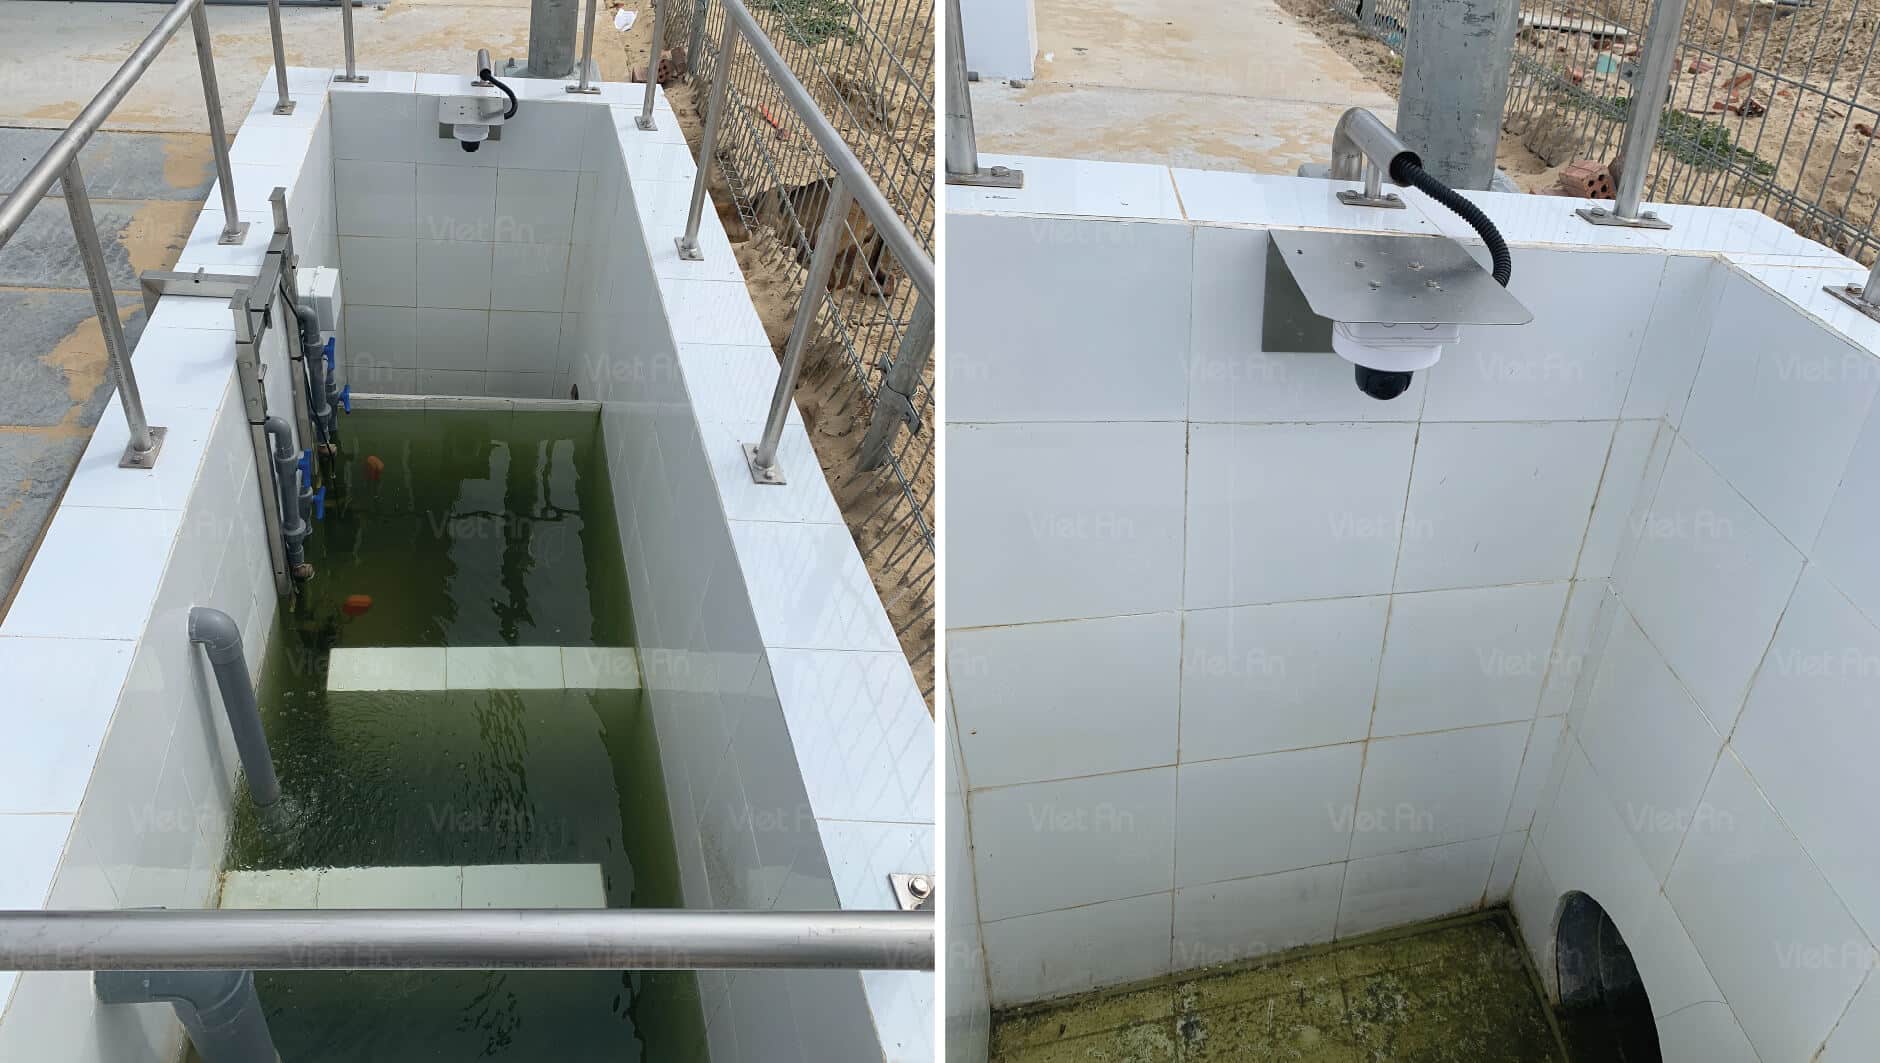 fpt-da-nang-waste-water-monitoring